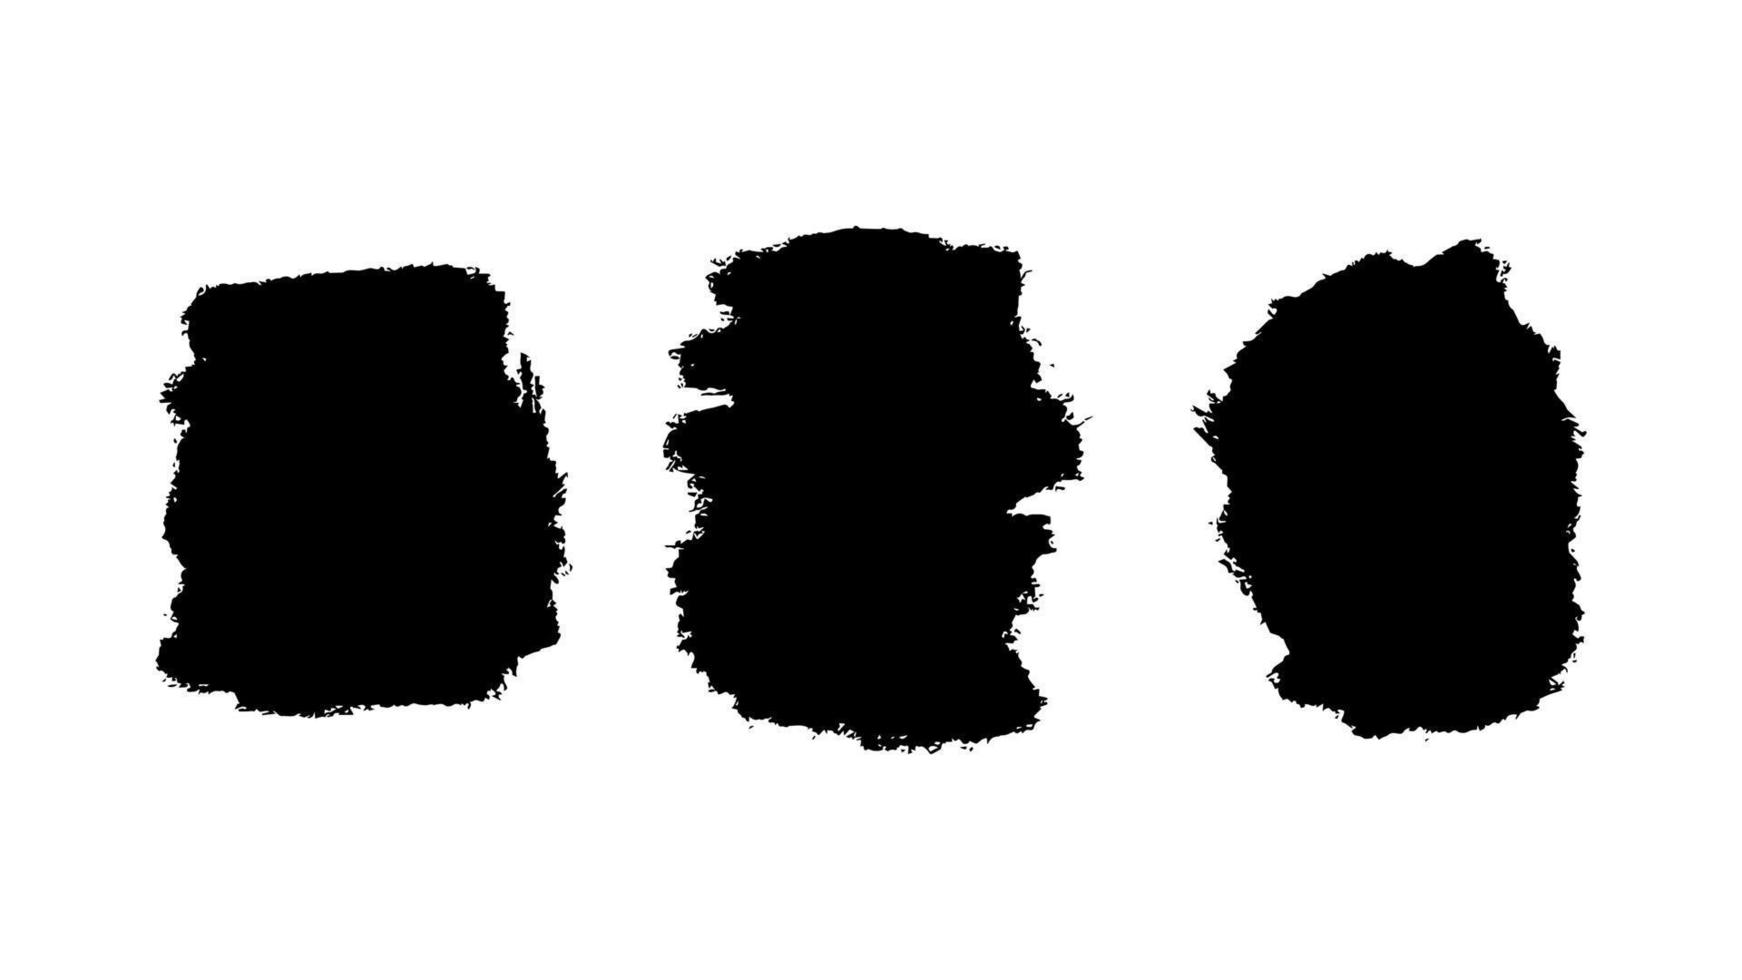 reeks van grunge borstel slagen. abstract vuil zwart inkt geklater structuur vector